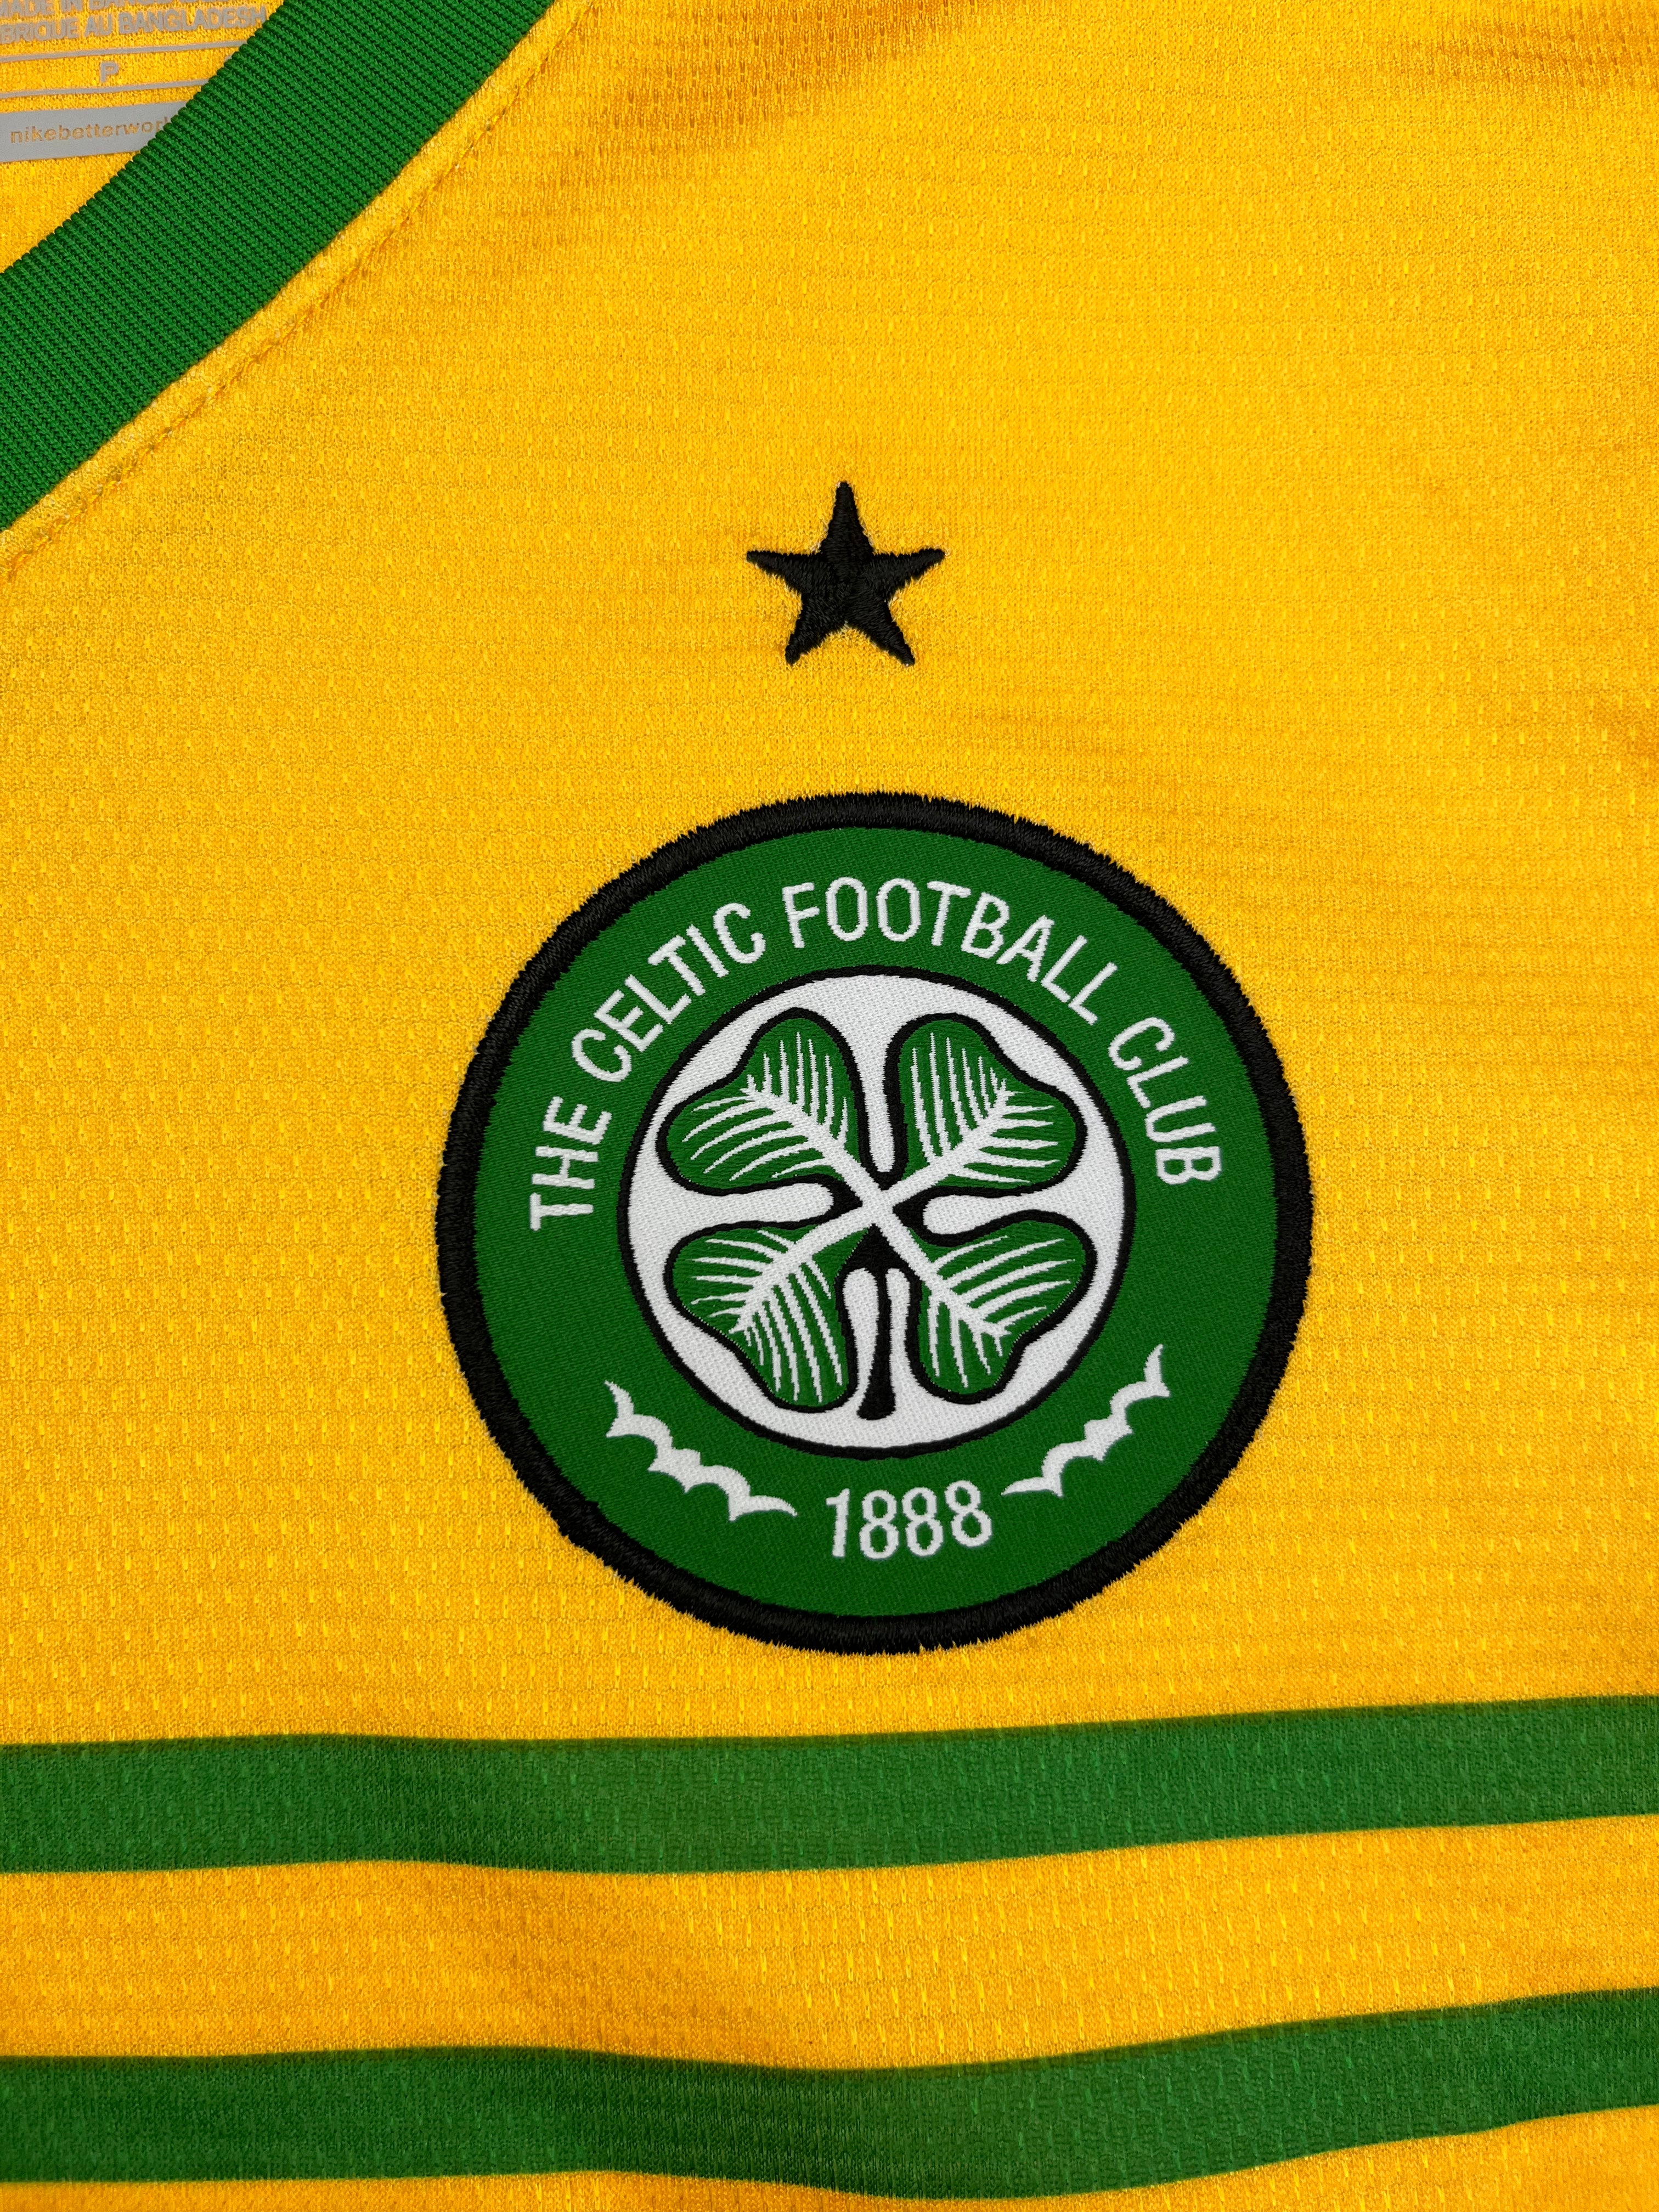 Nike reveals new Celtic away kit for 2013/14